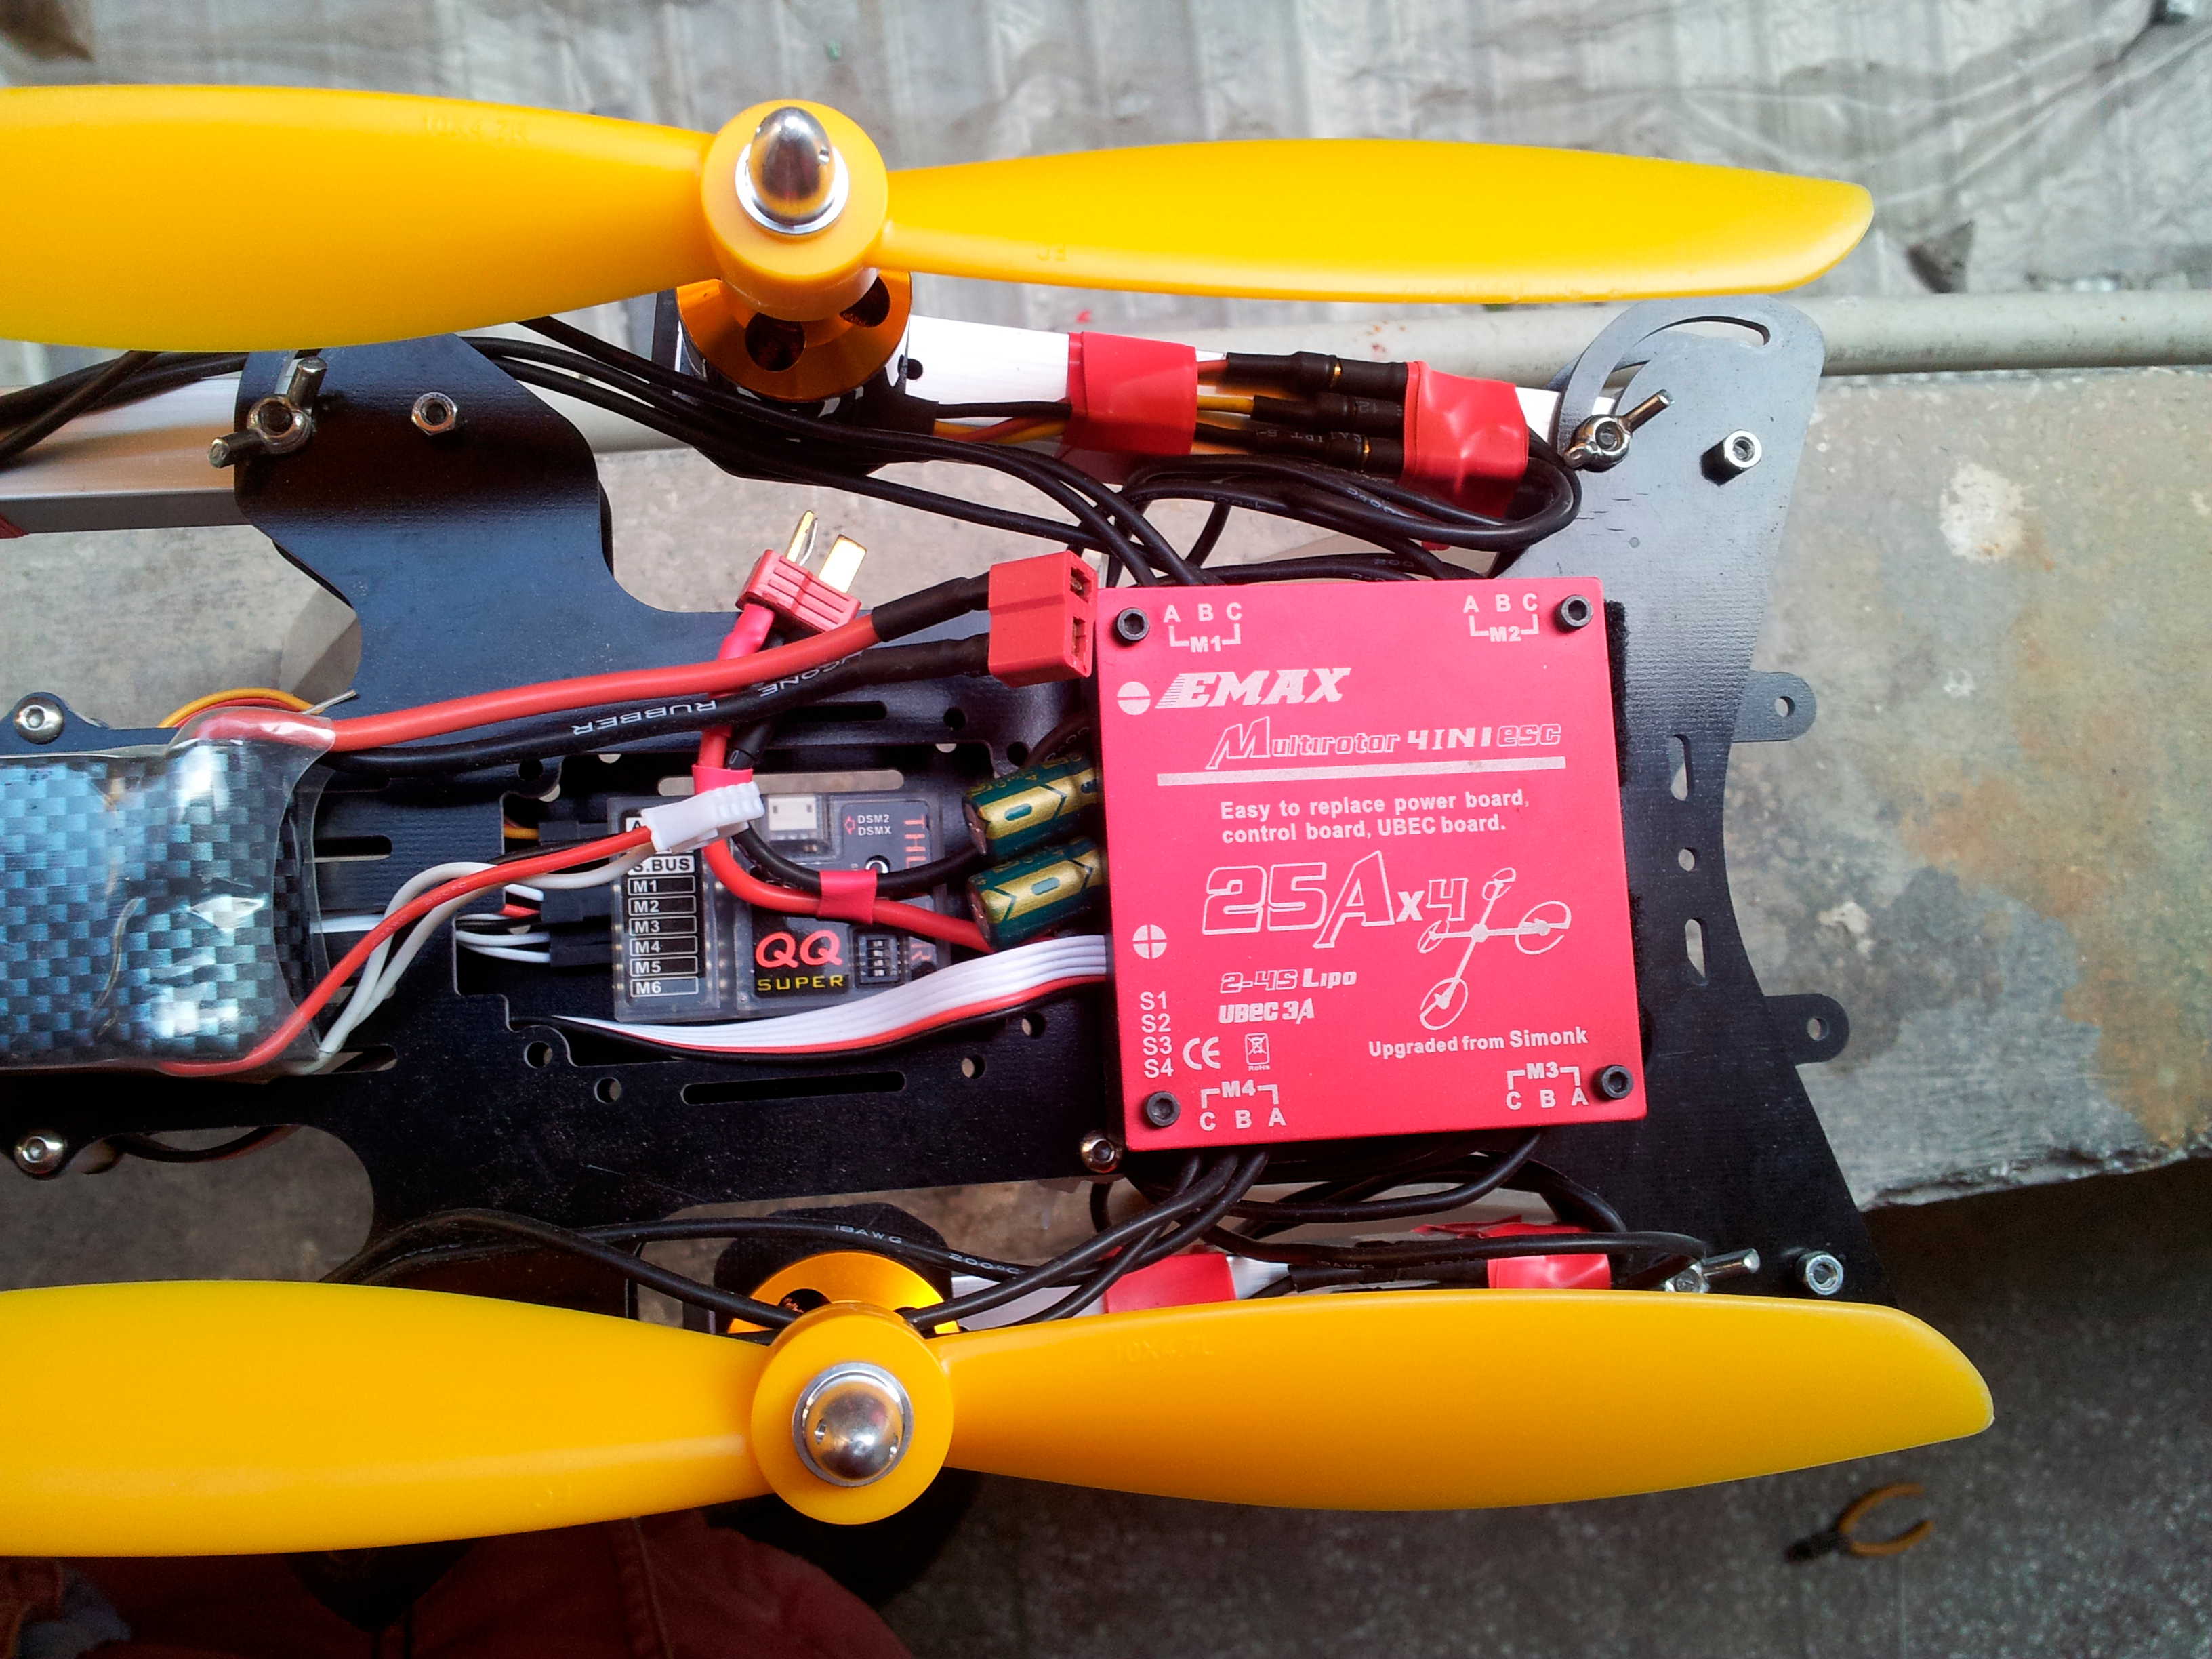 初试QQ飞控 电池,飞控,电调,电机,遥控器 作者:汶川热带鱼 8676 